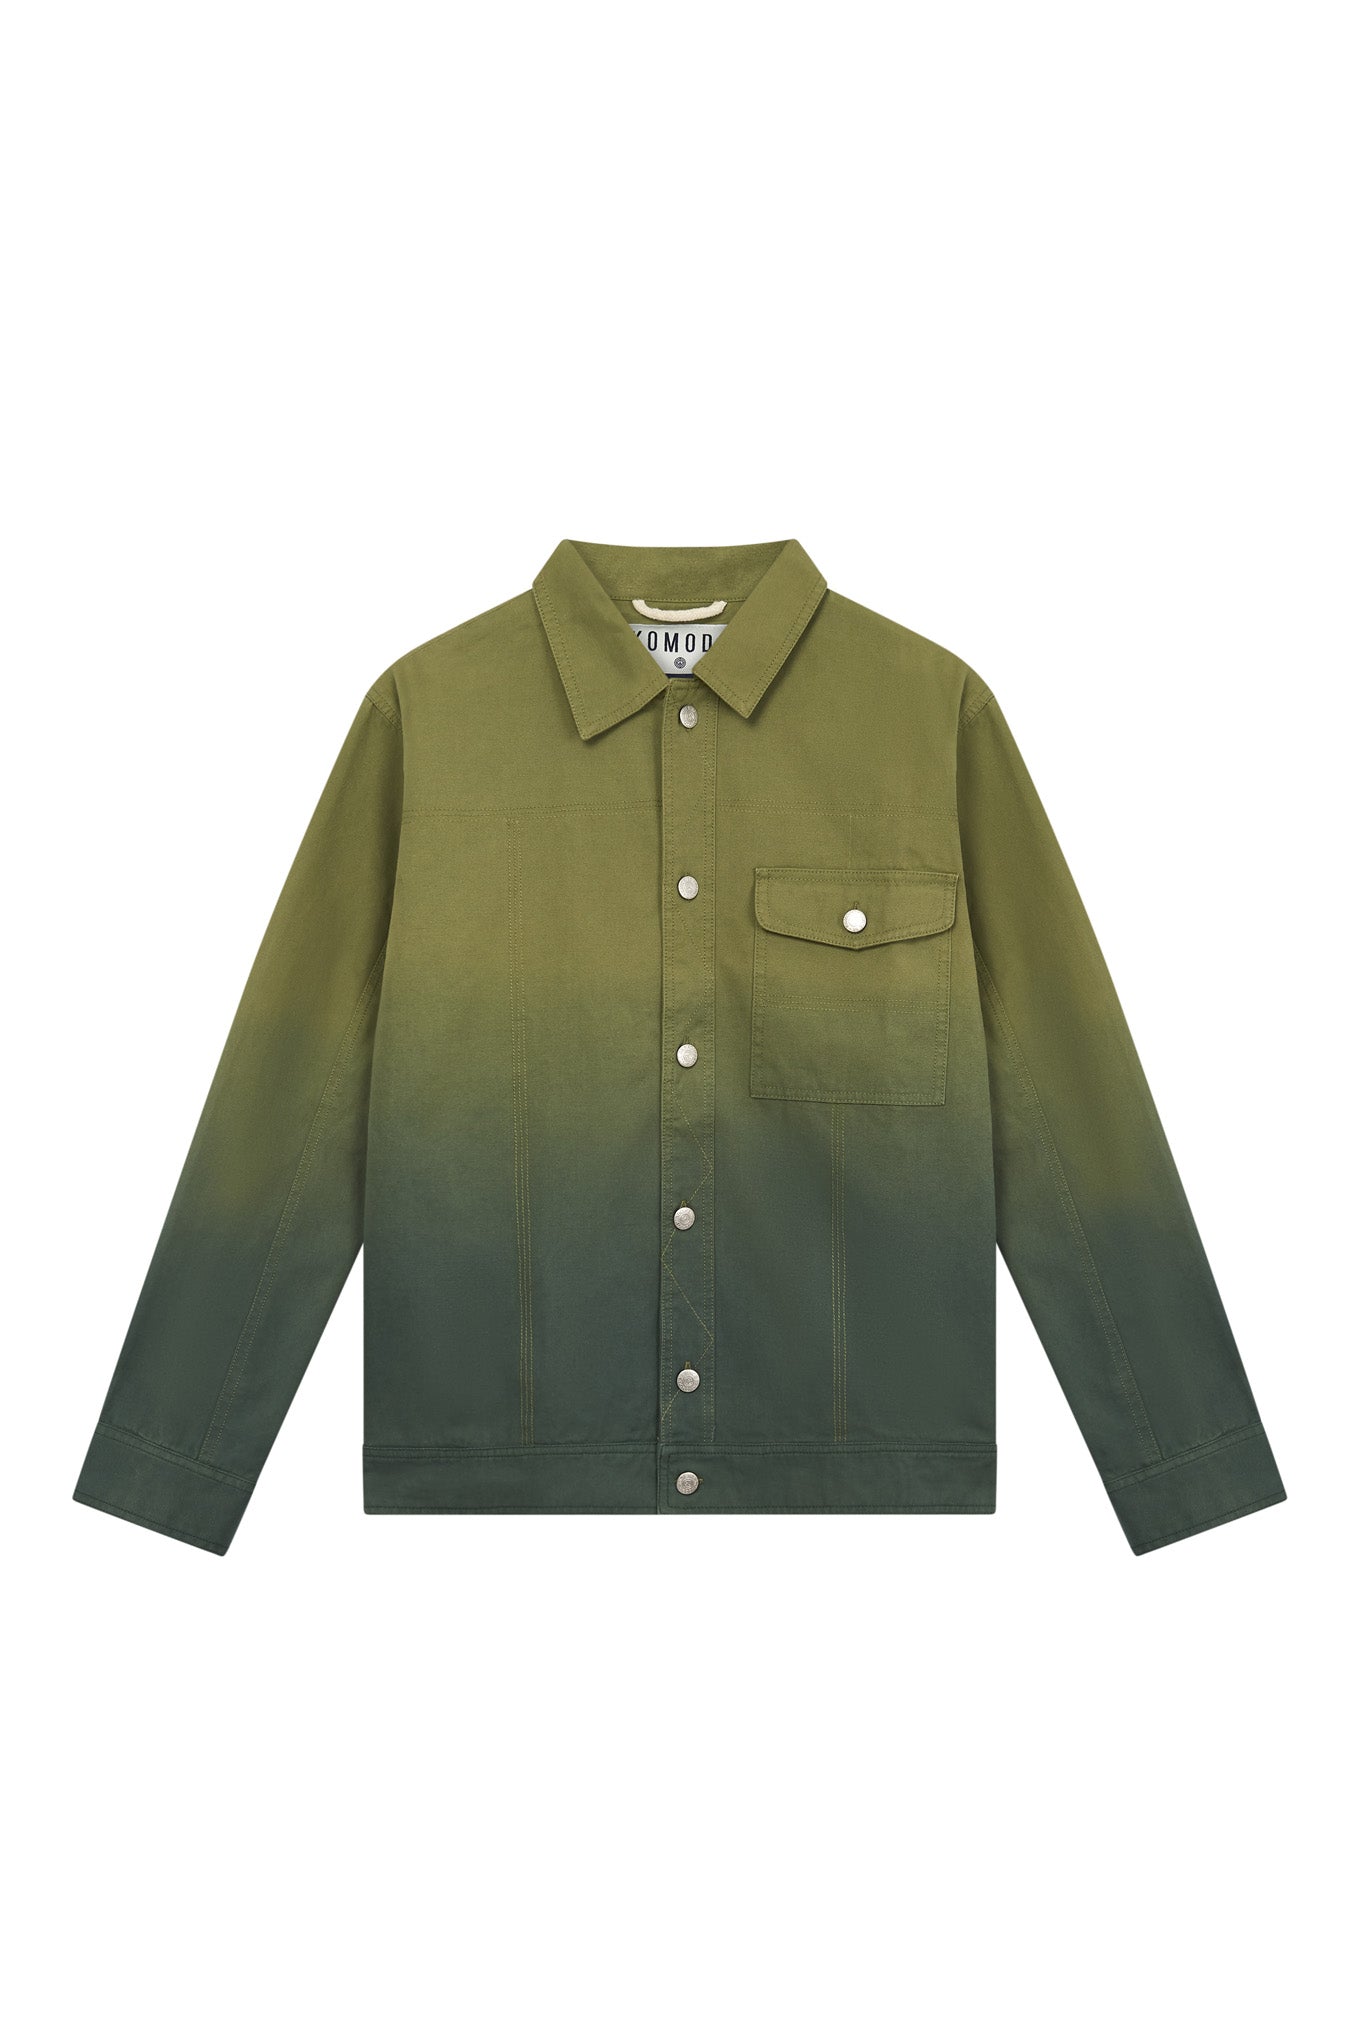 ORINO Dip Dyed Mens Jacket - Khaki Green, Large